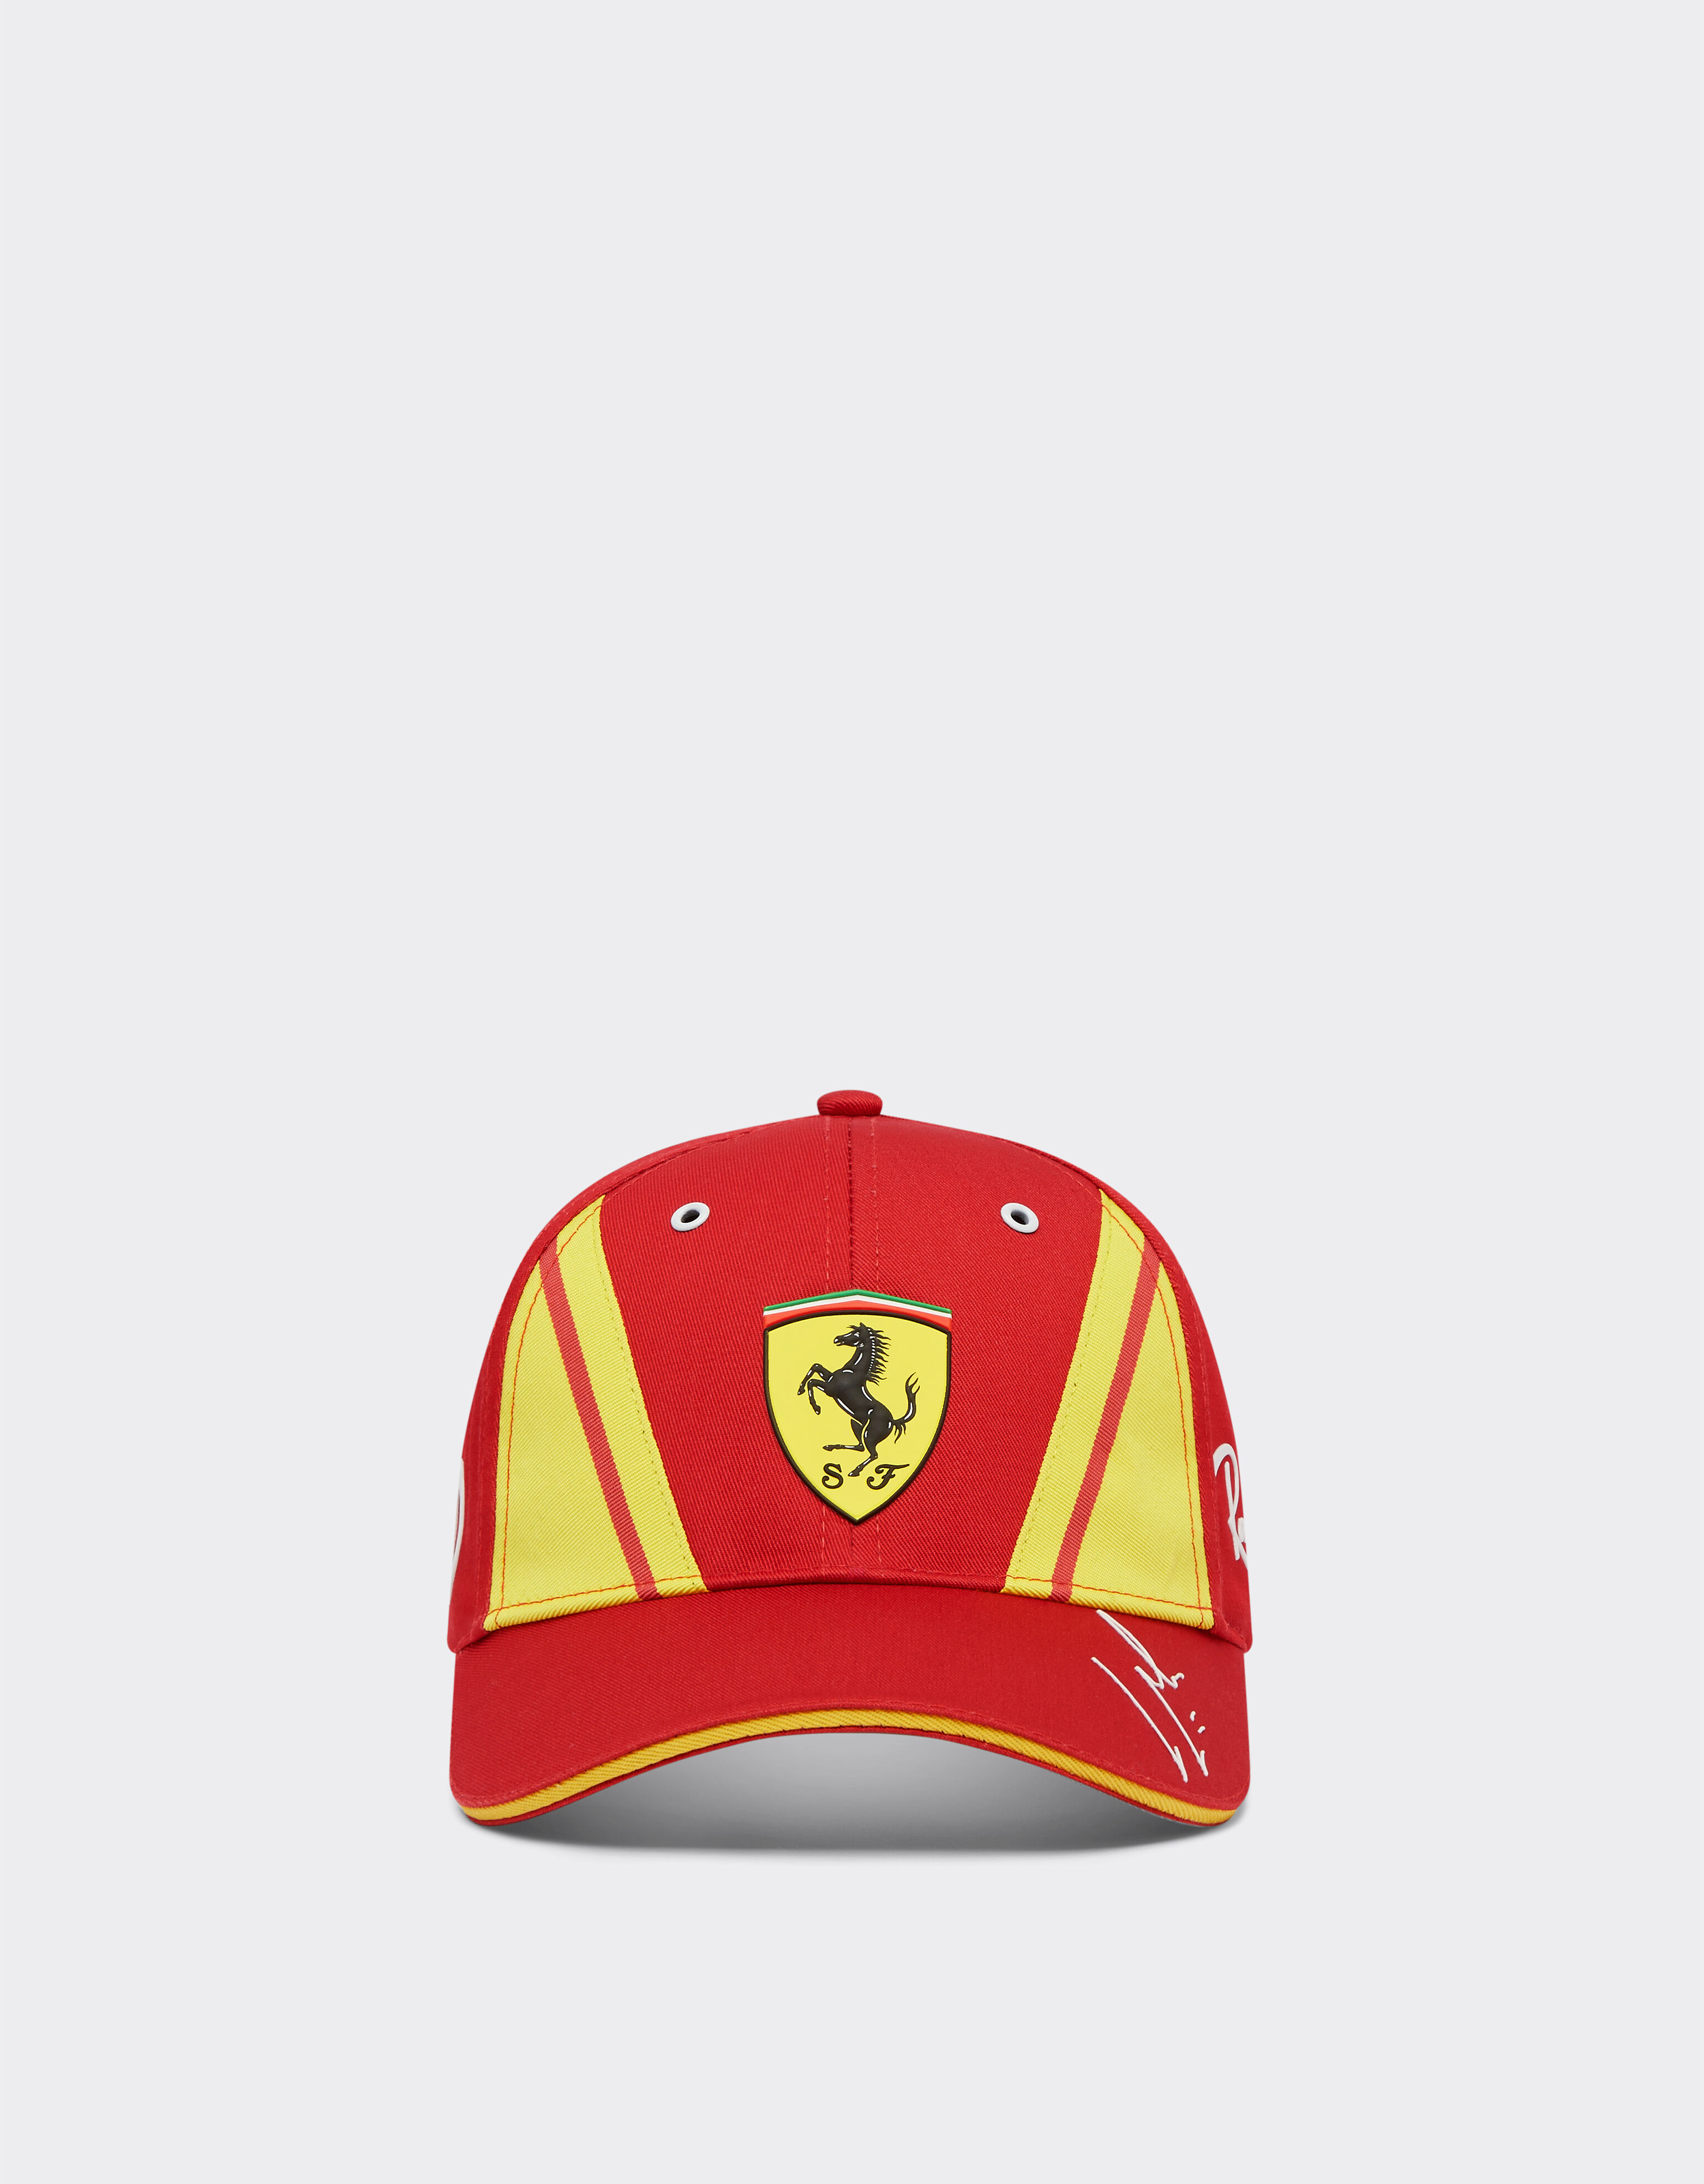 Ferrari Cappellino Molina Ferrari Hypercar - Edizione limitata Rosso F1323f